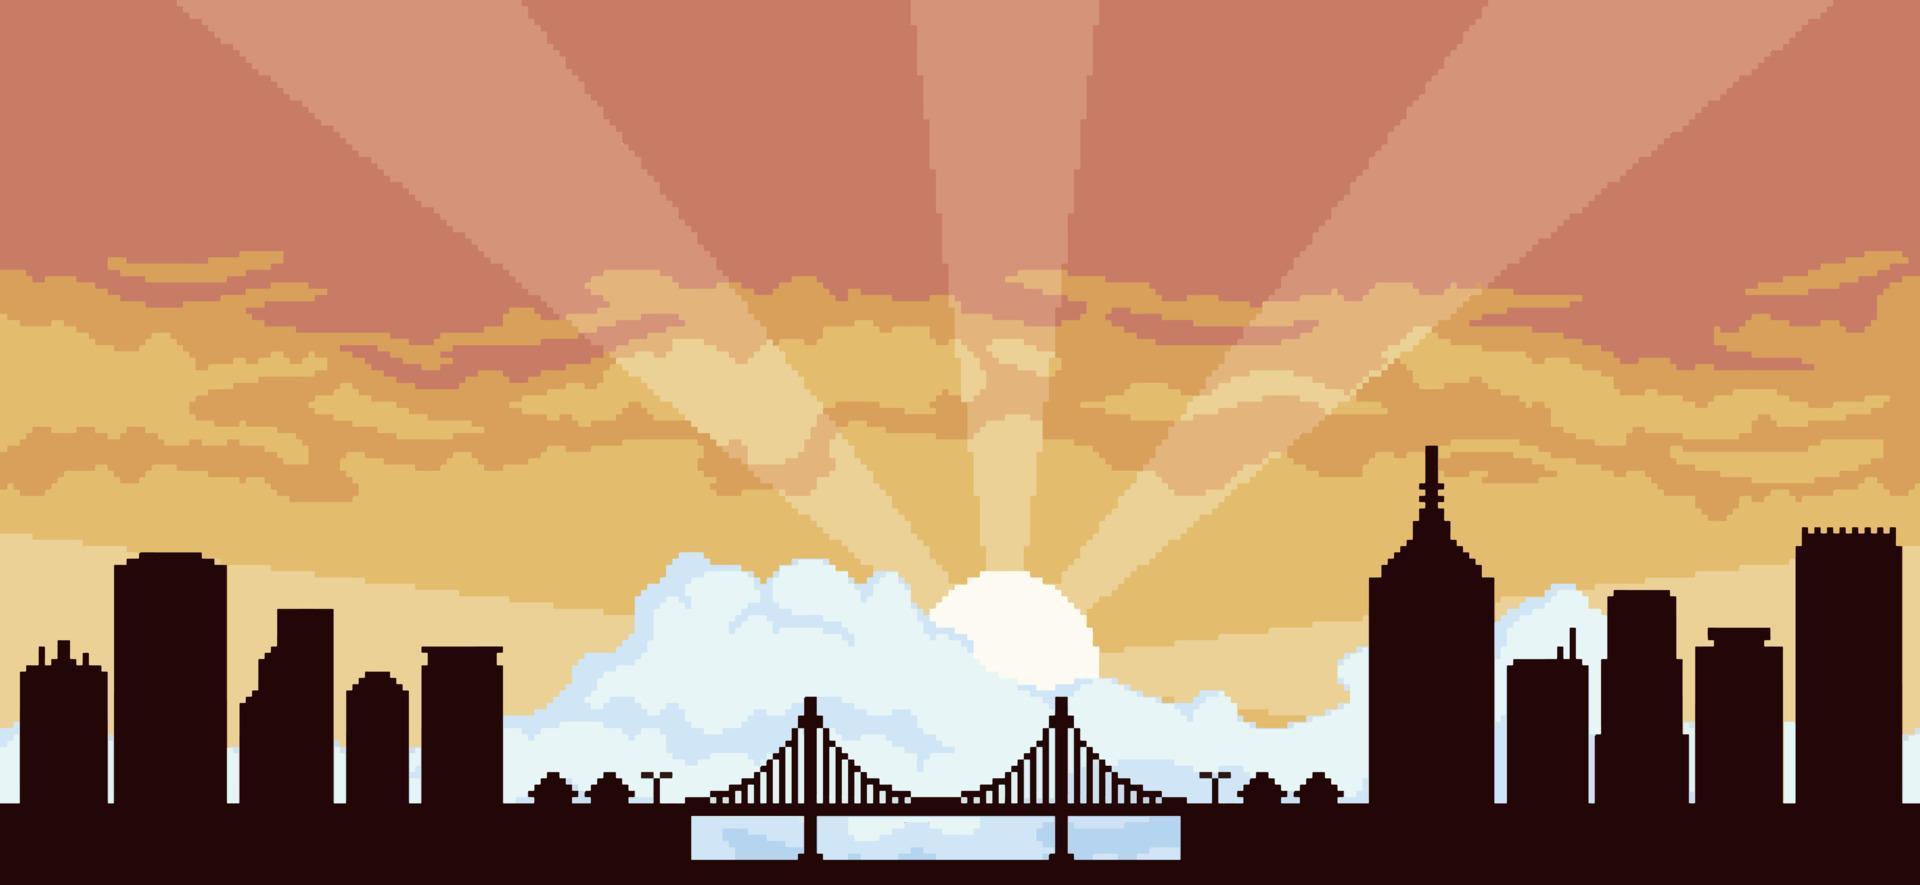 Pixel Art City Hintergrund bei Sonnenuntergang mit Gebäuden, Konstruktionen, Brücke und bewölktem Himmel für 8-Bit-Spiel vektor